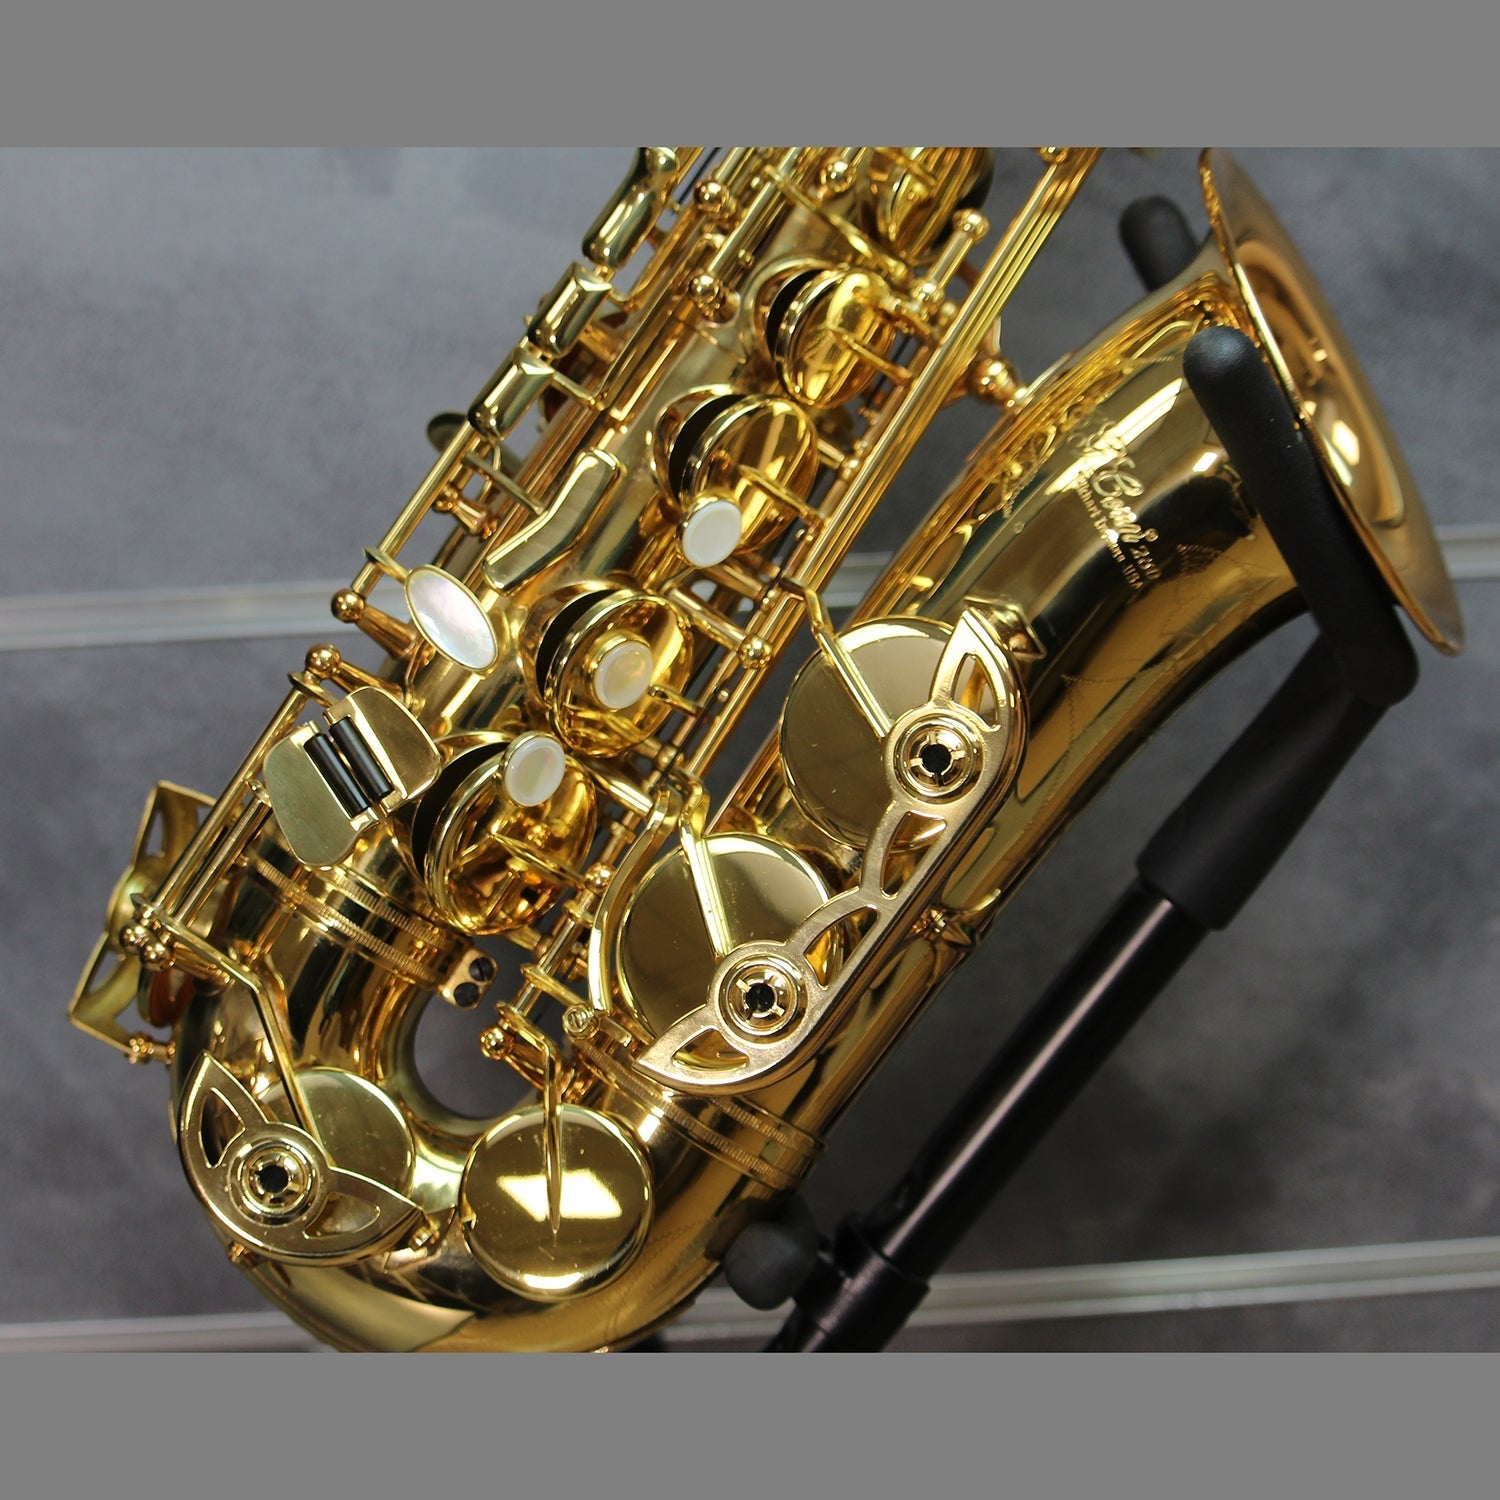 Kèn Saxophone Alto Conn-Selmer CAS280R - Việt Music